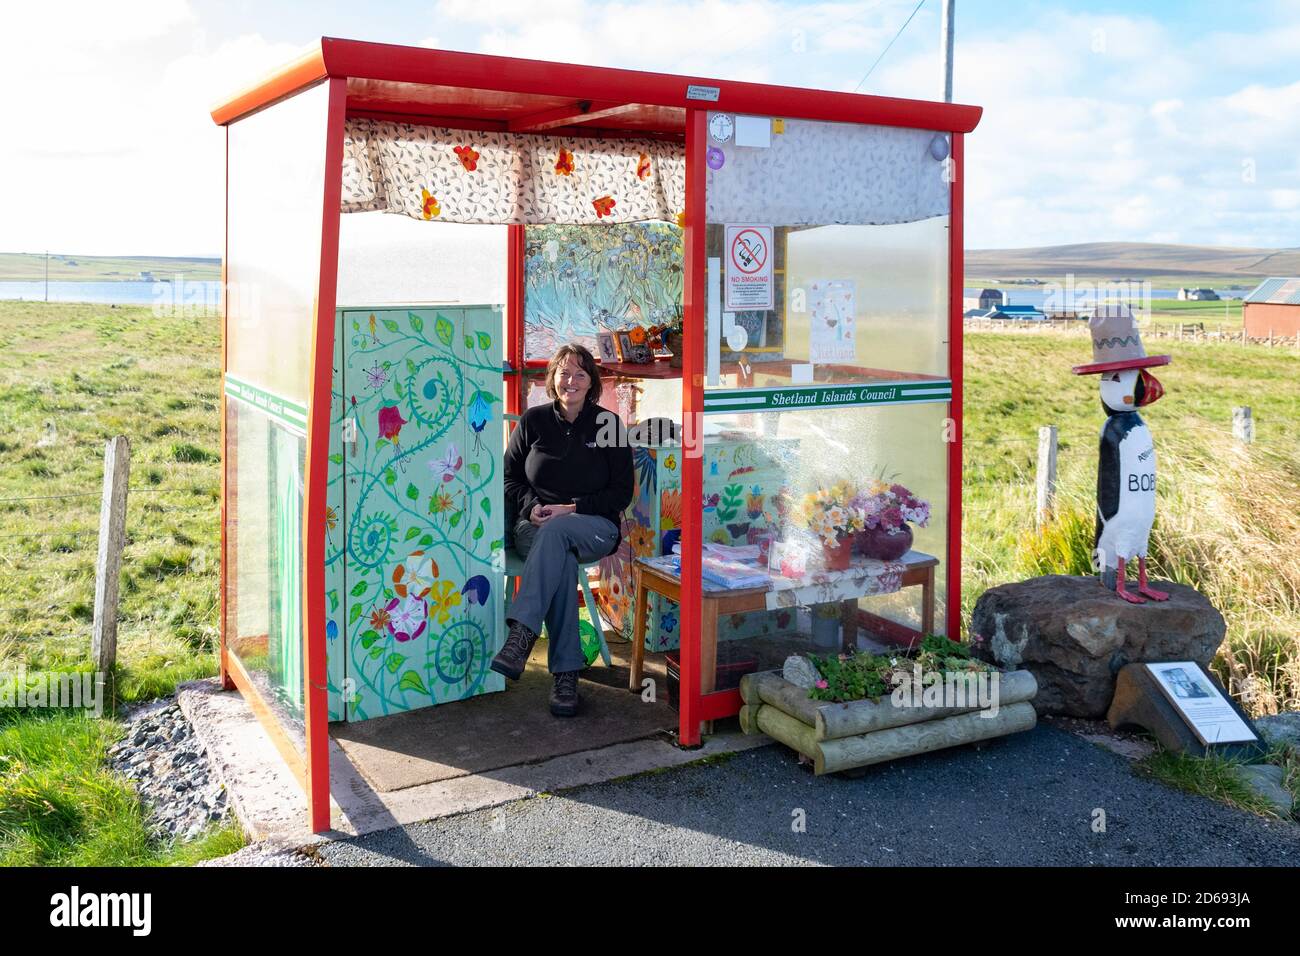 Bobby's Bus Shelter - turista seduto all'interno della bizzarra attrazione turistica, Unst, Shetland, Scozia, Regno Unito Foto Stock